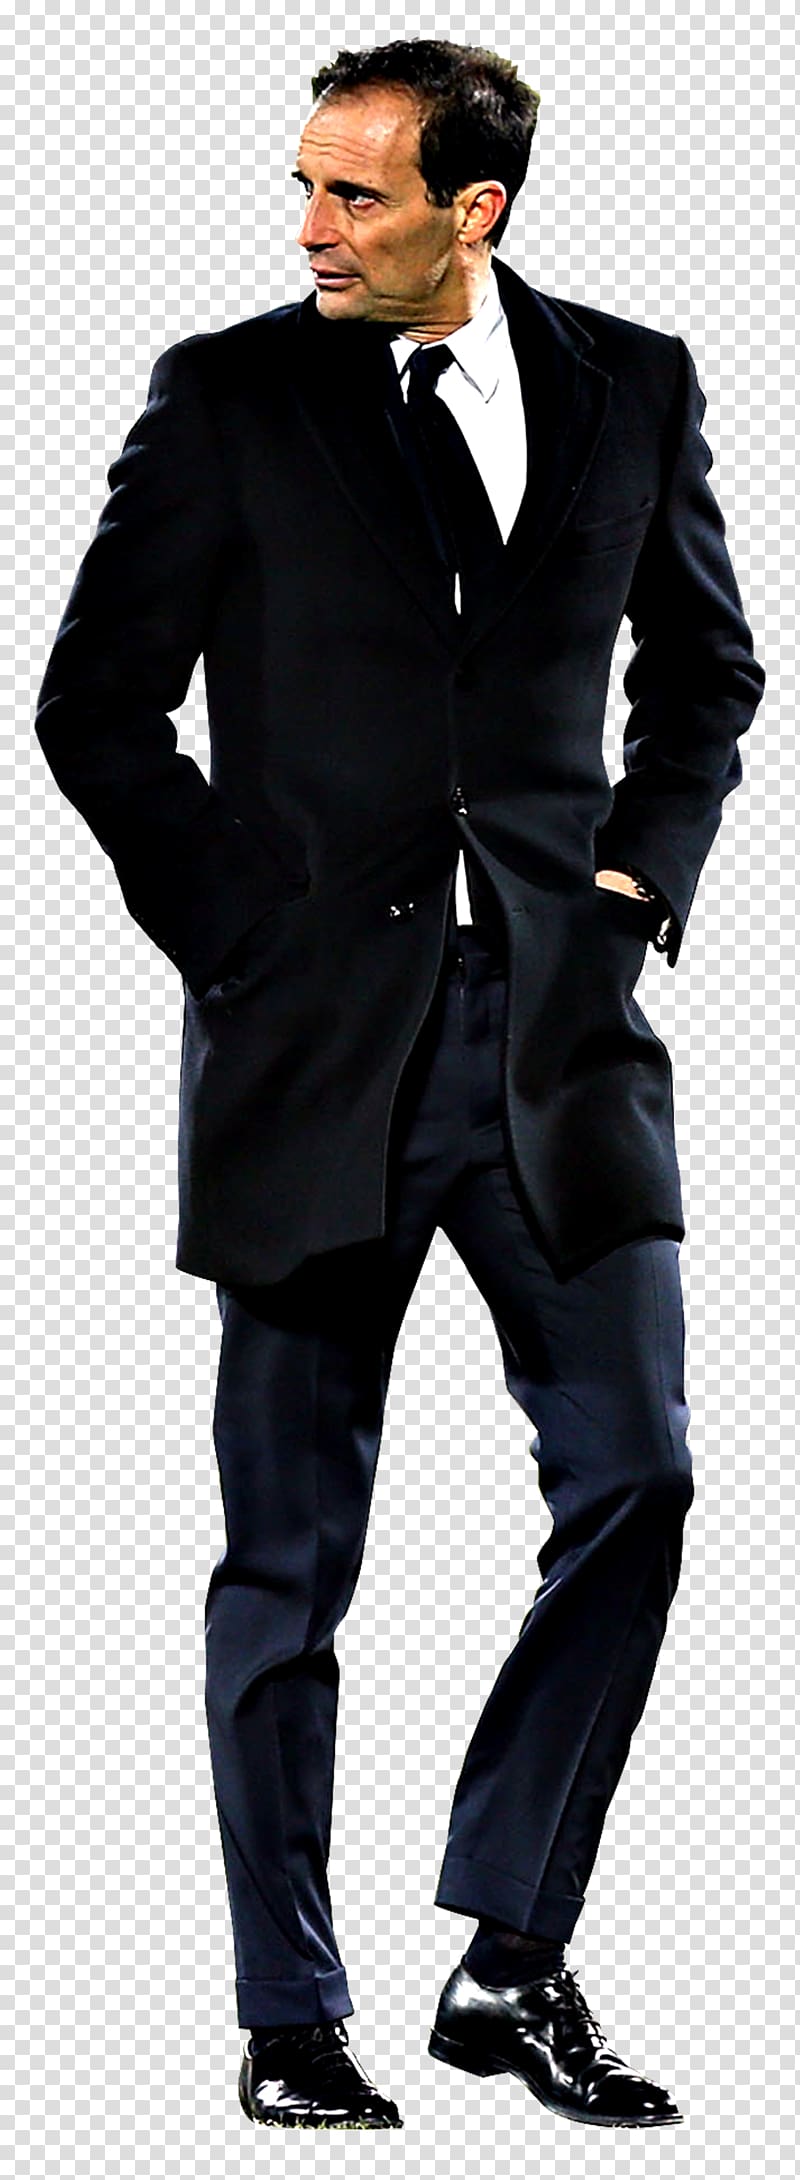 Suit Moncler Jacket Coat Formal wear, suit transparent background PNG clipart